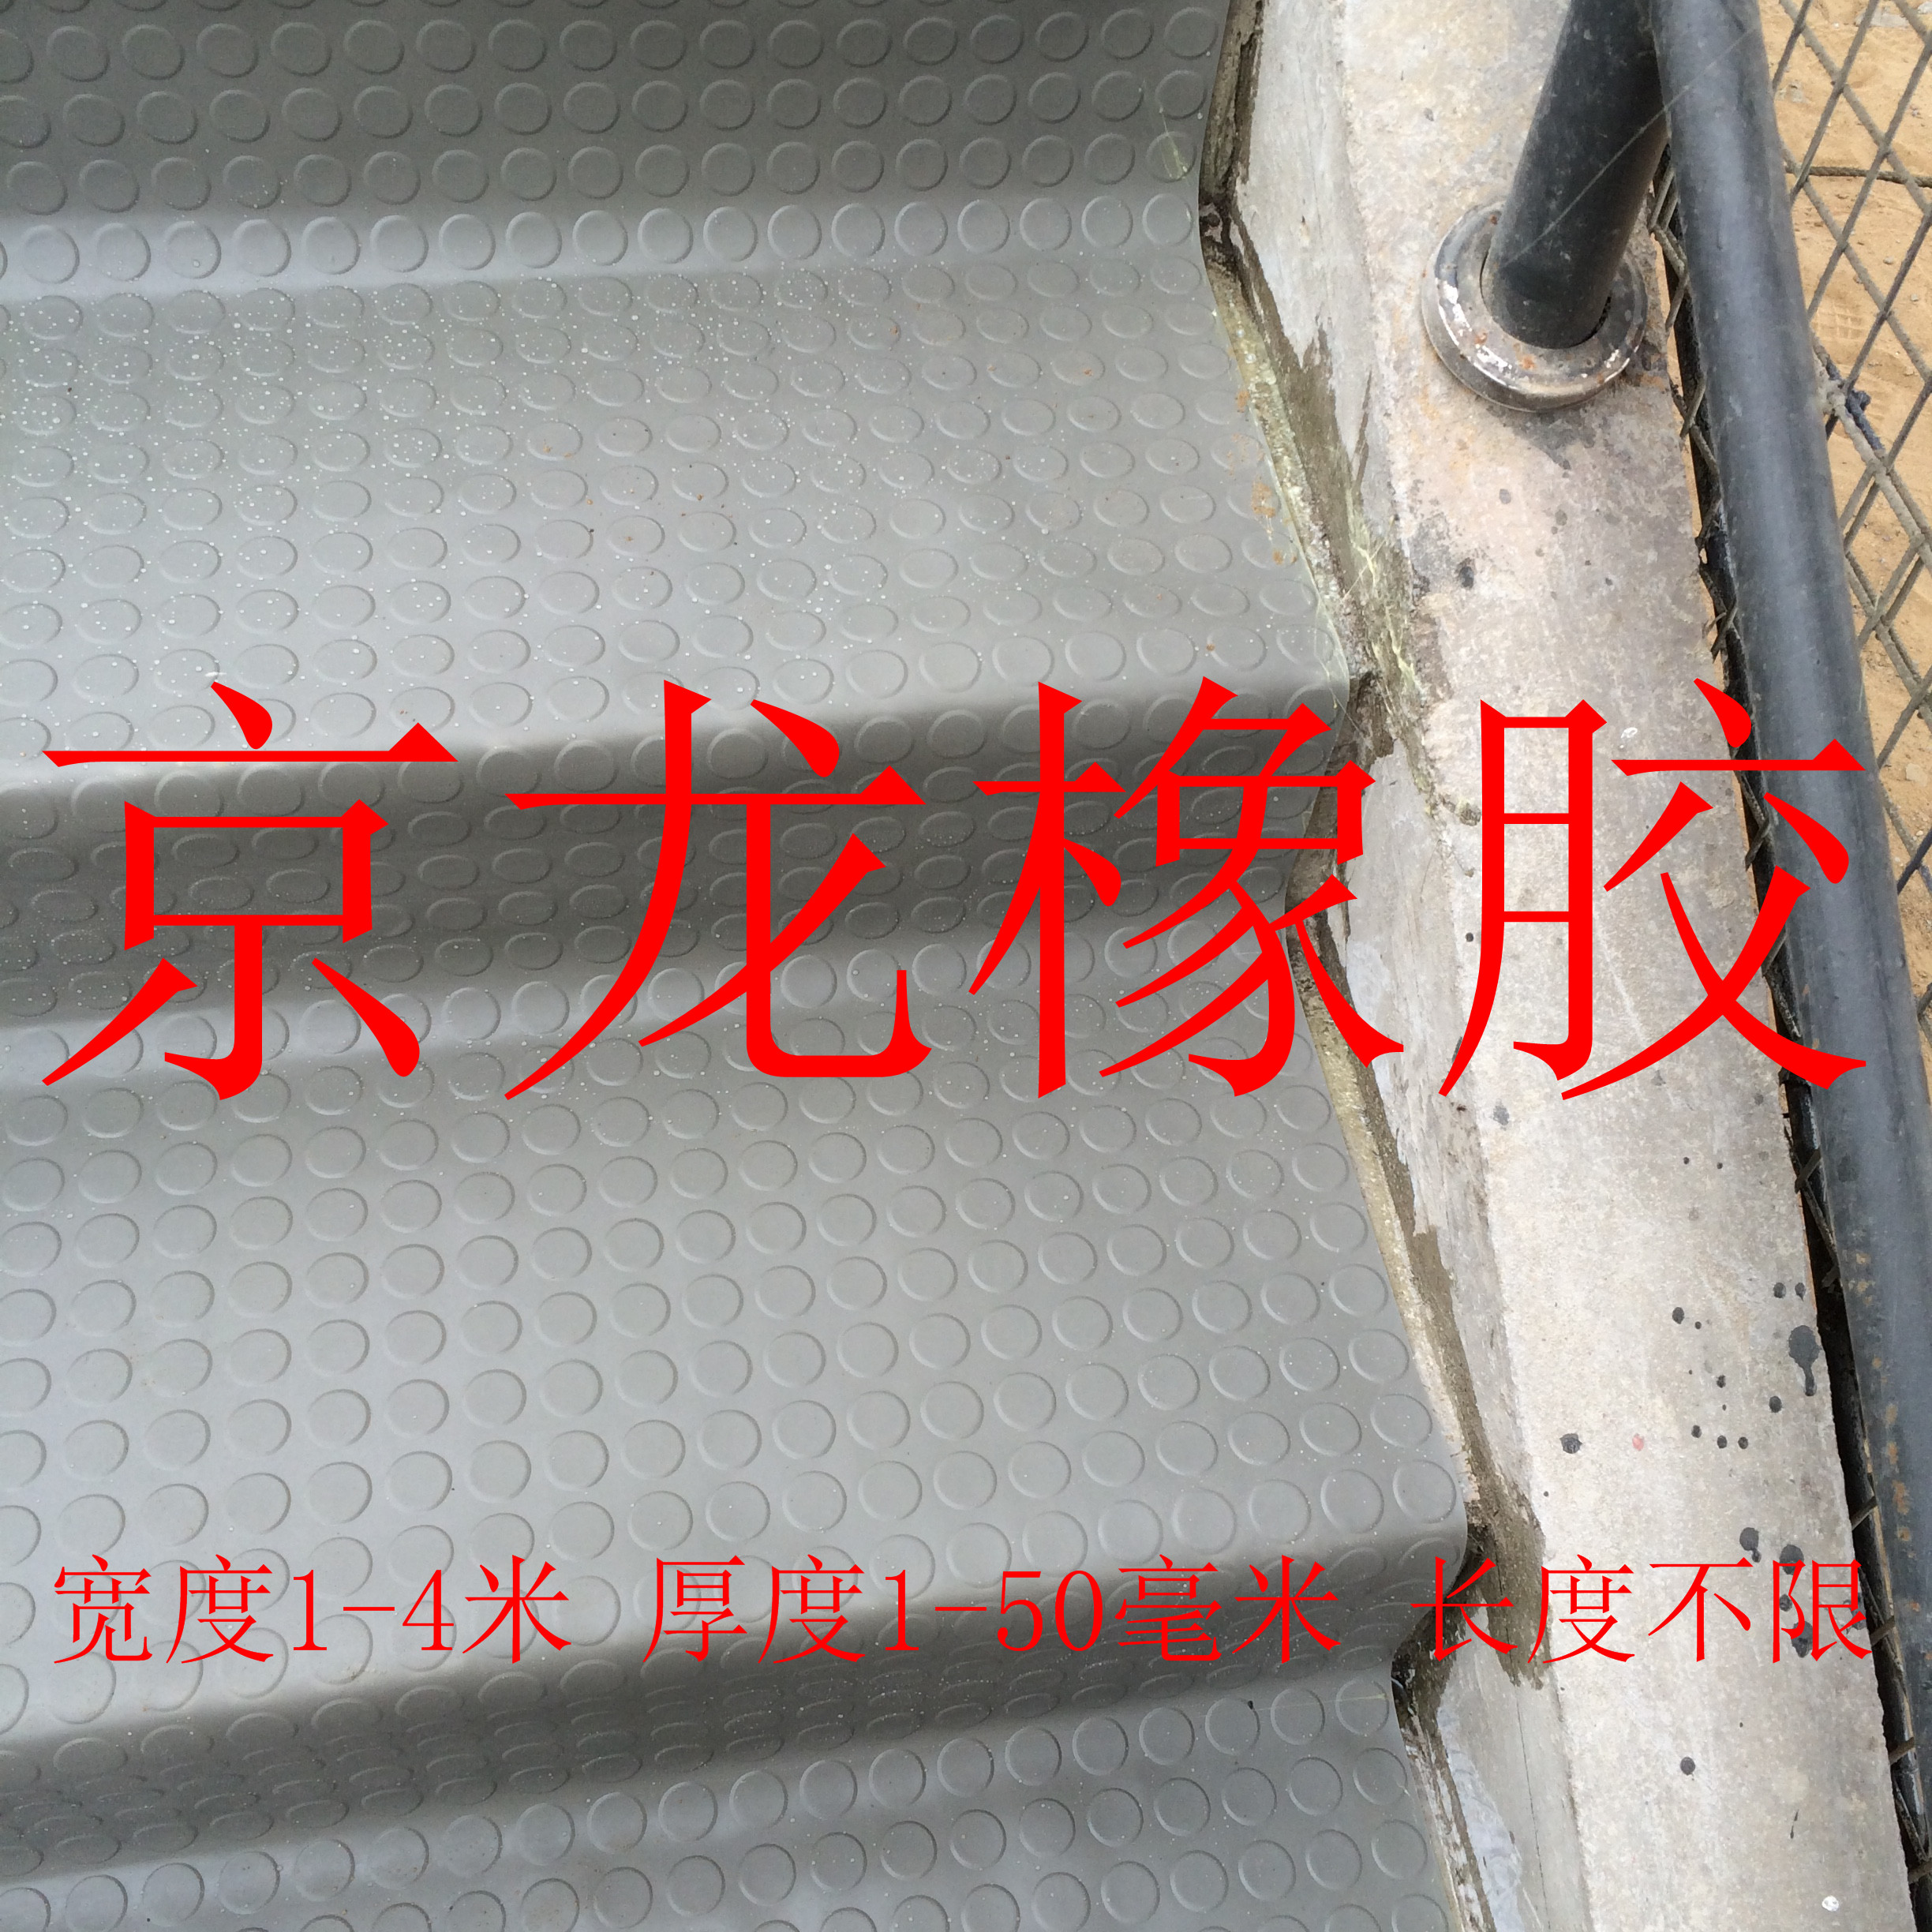 圆扣防滑橡胶板 灰色防滑橡胶板 河间市京龙建筑材料有限公司